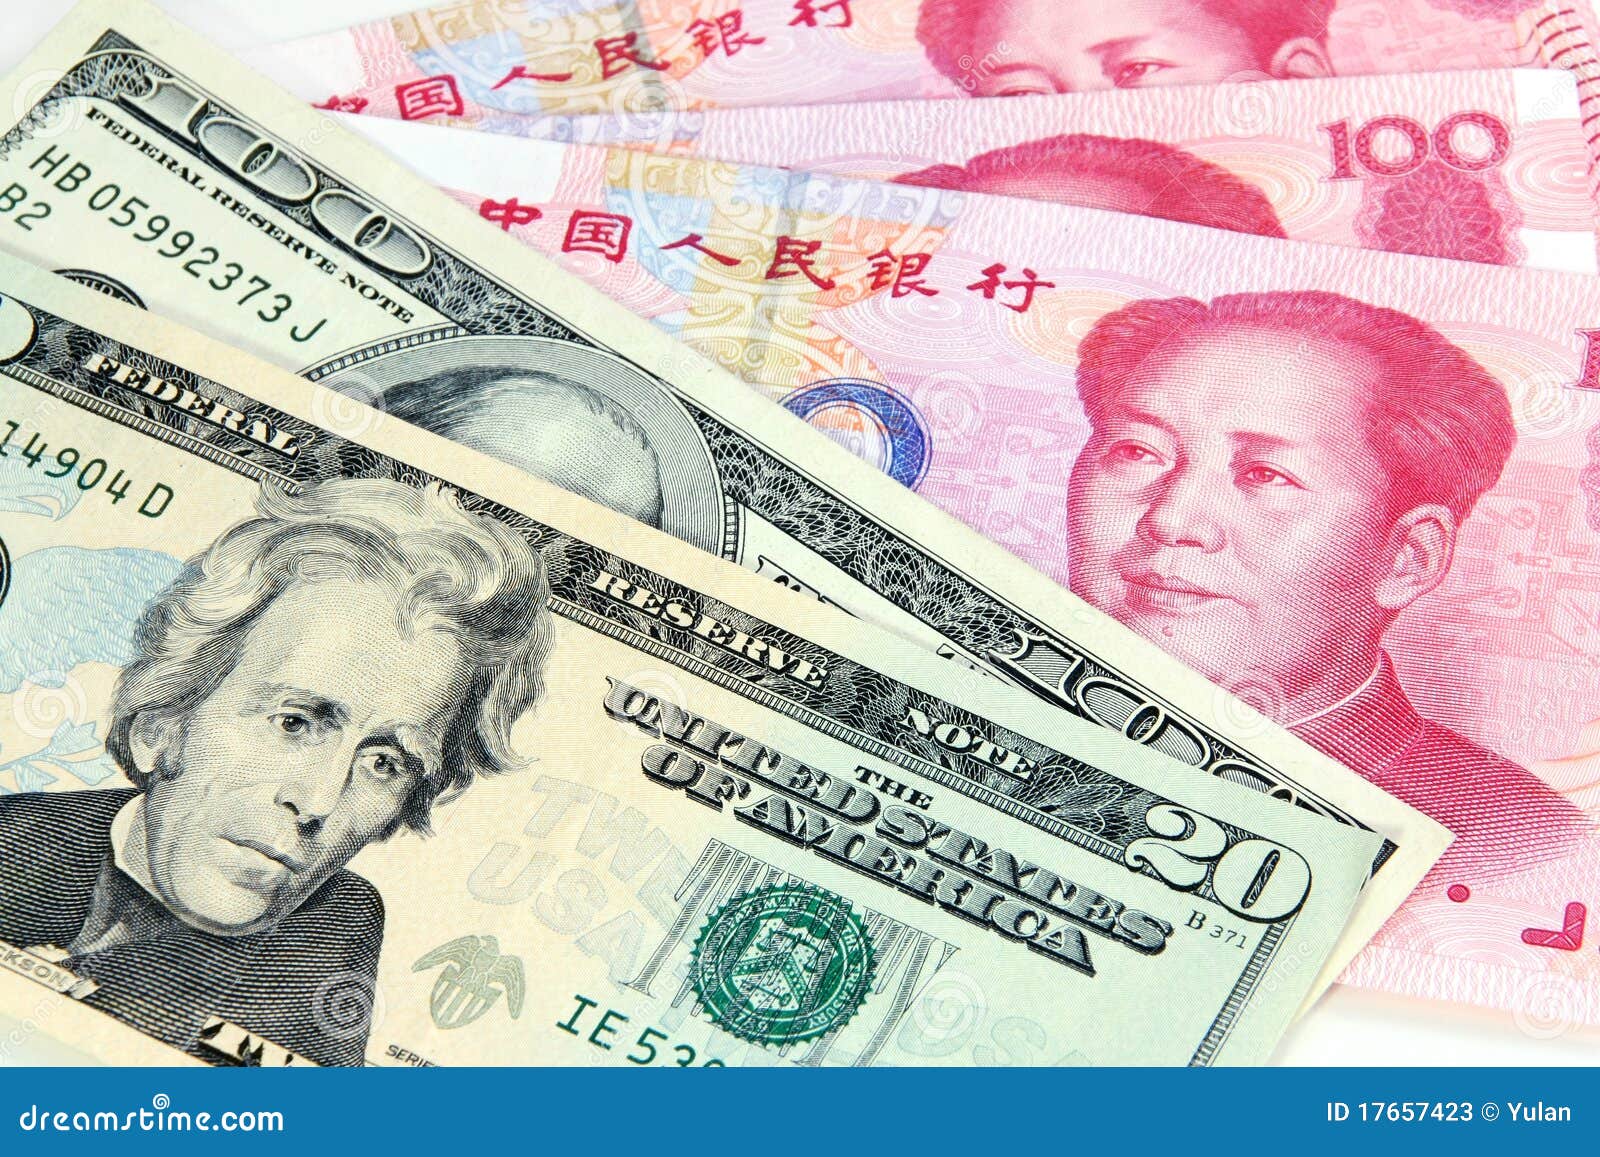 Юань иностранной валюты. Юань (валюта). Юань к доллару. Китайские деньги. Китайский доллар.